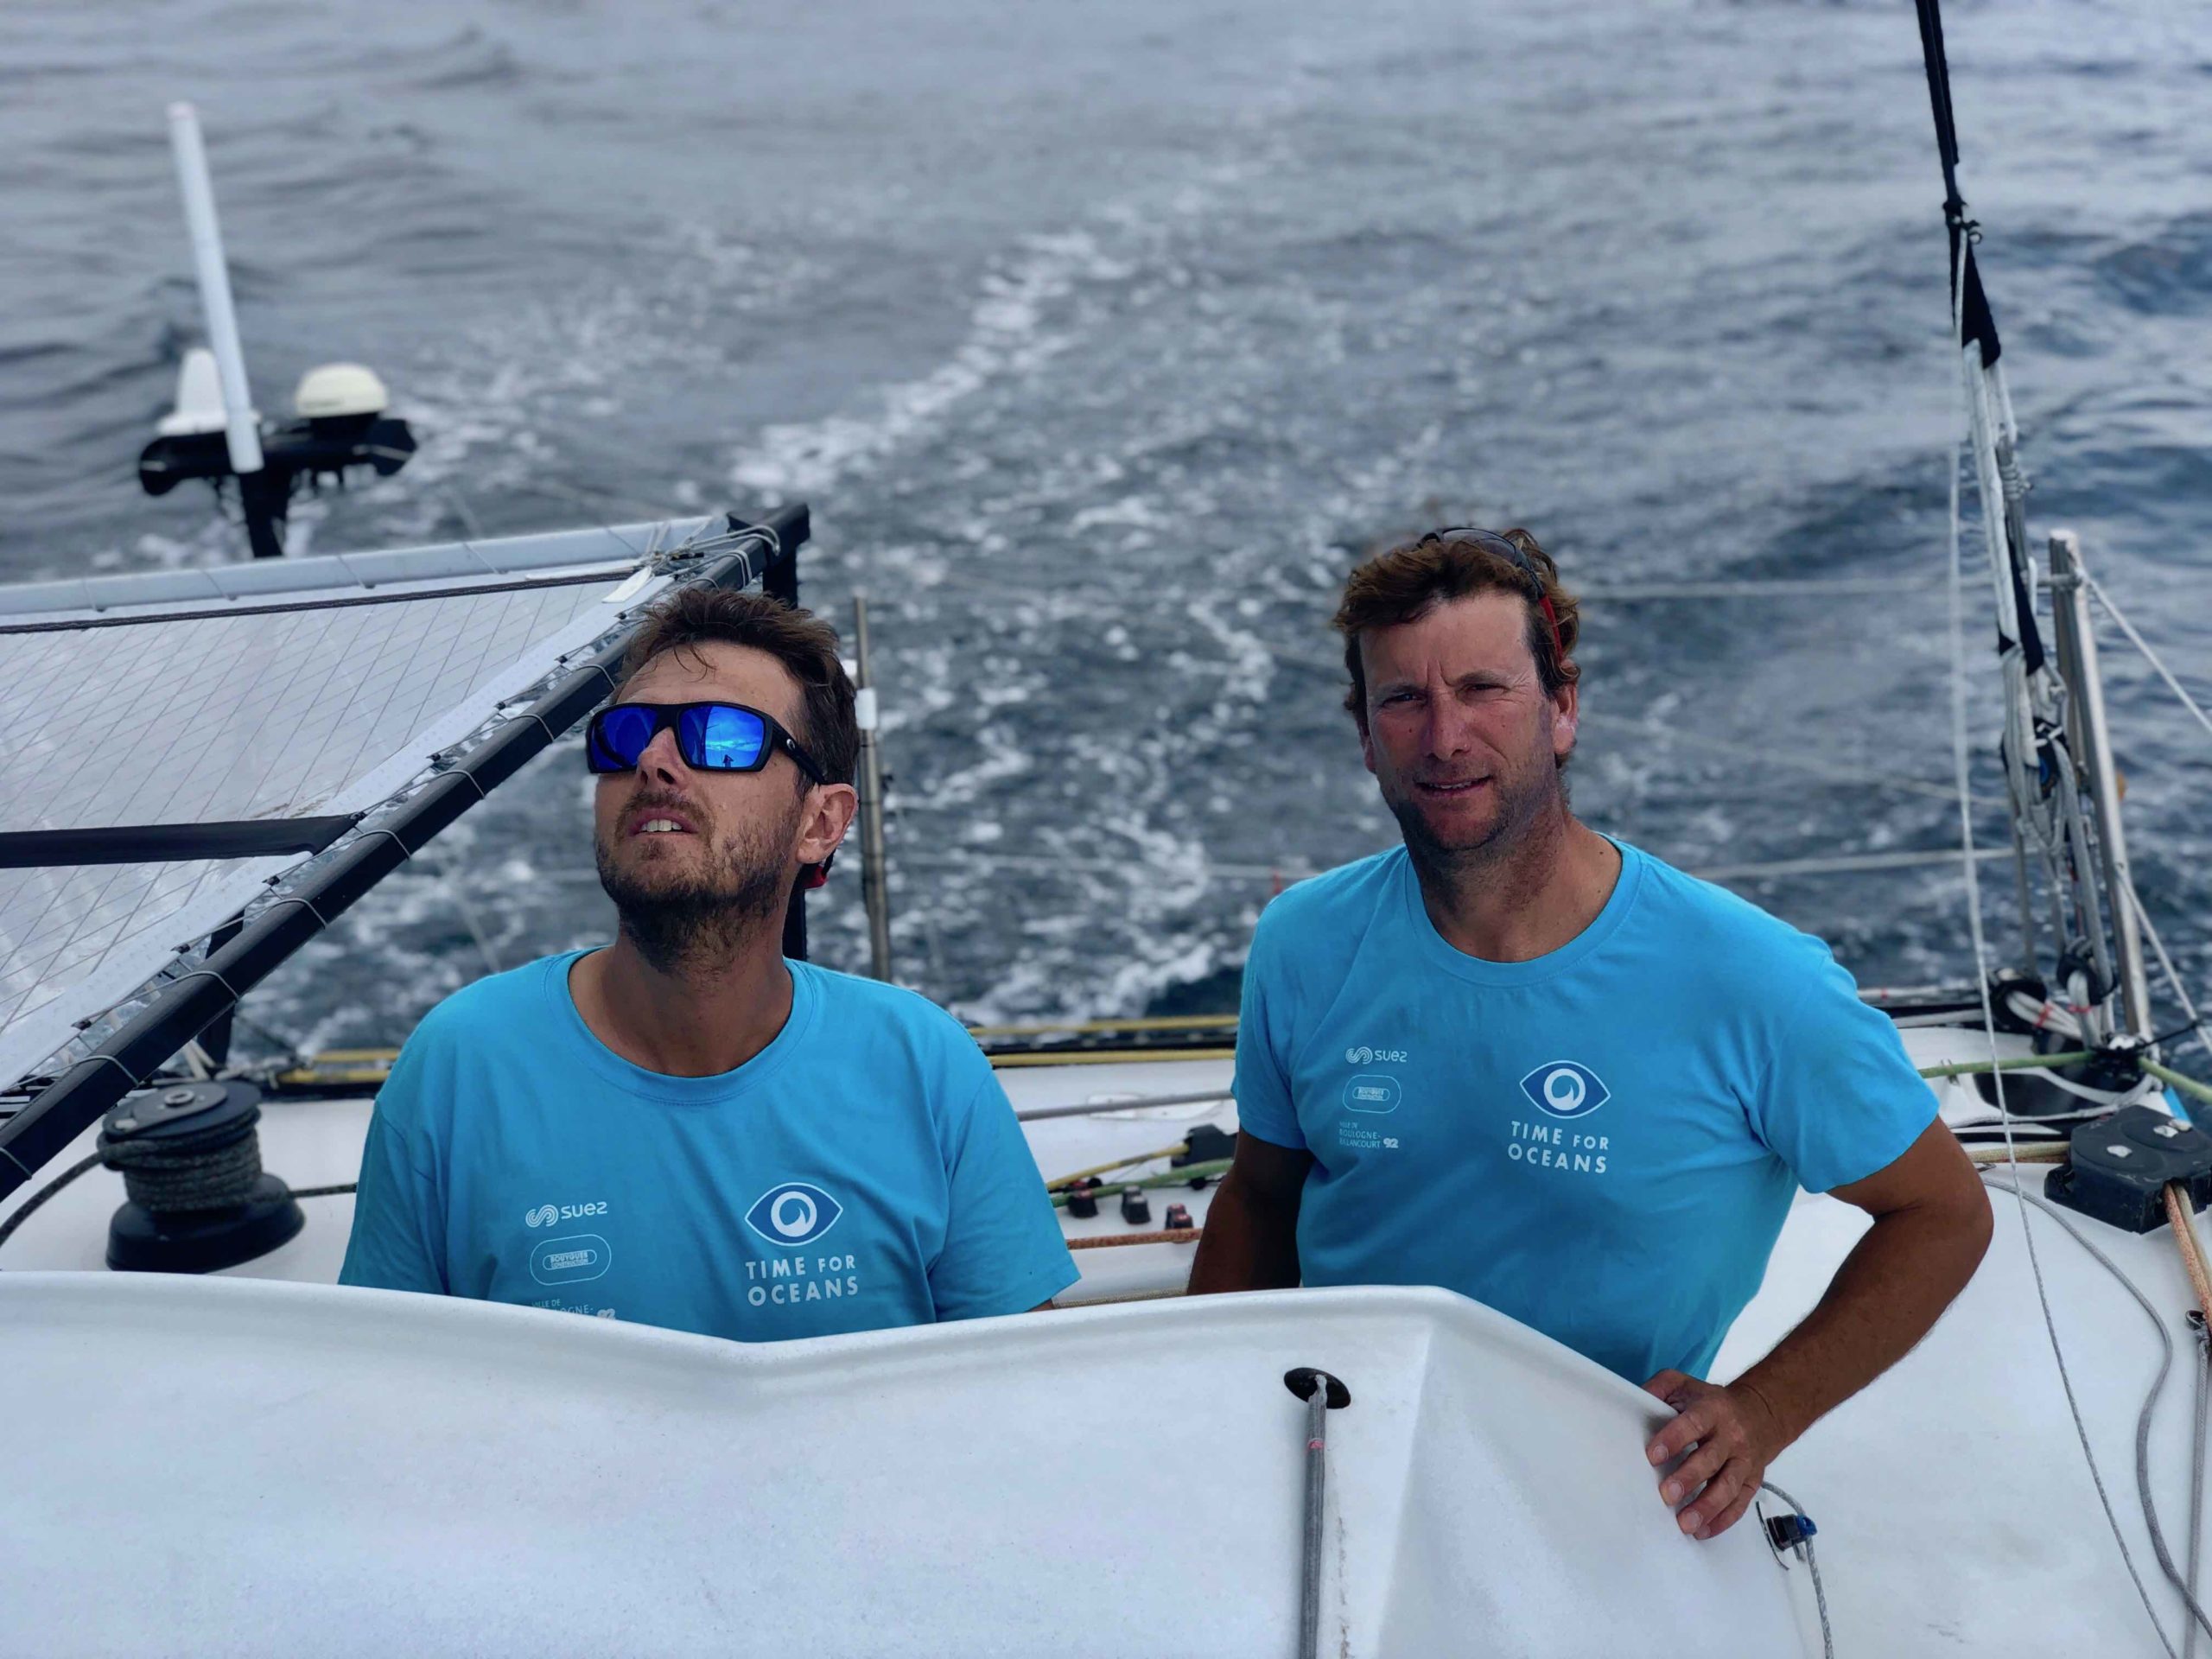 Bon départ pour Stéphane Le Diraison et François Guiffant sur la Fastnet Race à bord de Time For Oceans.